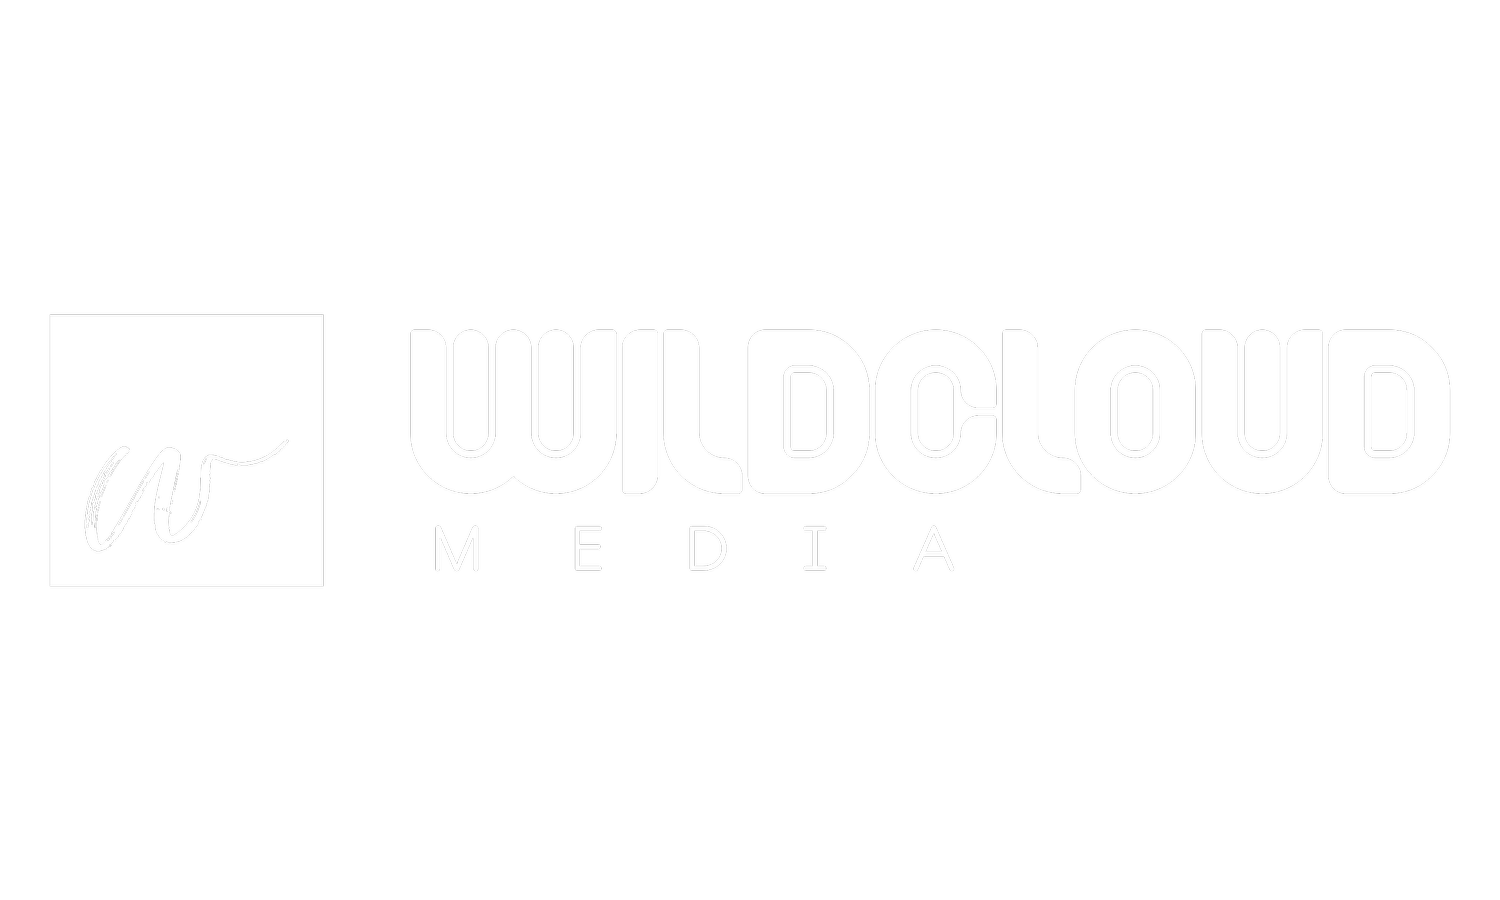 Wildcloud Media